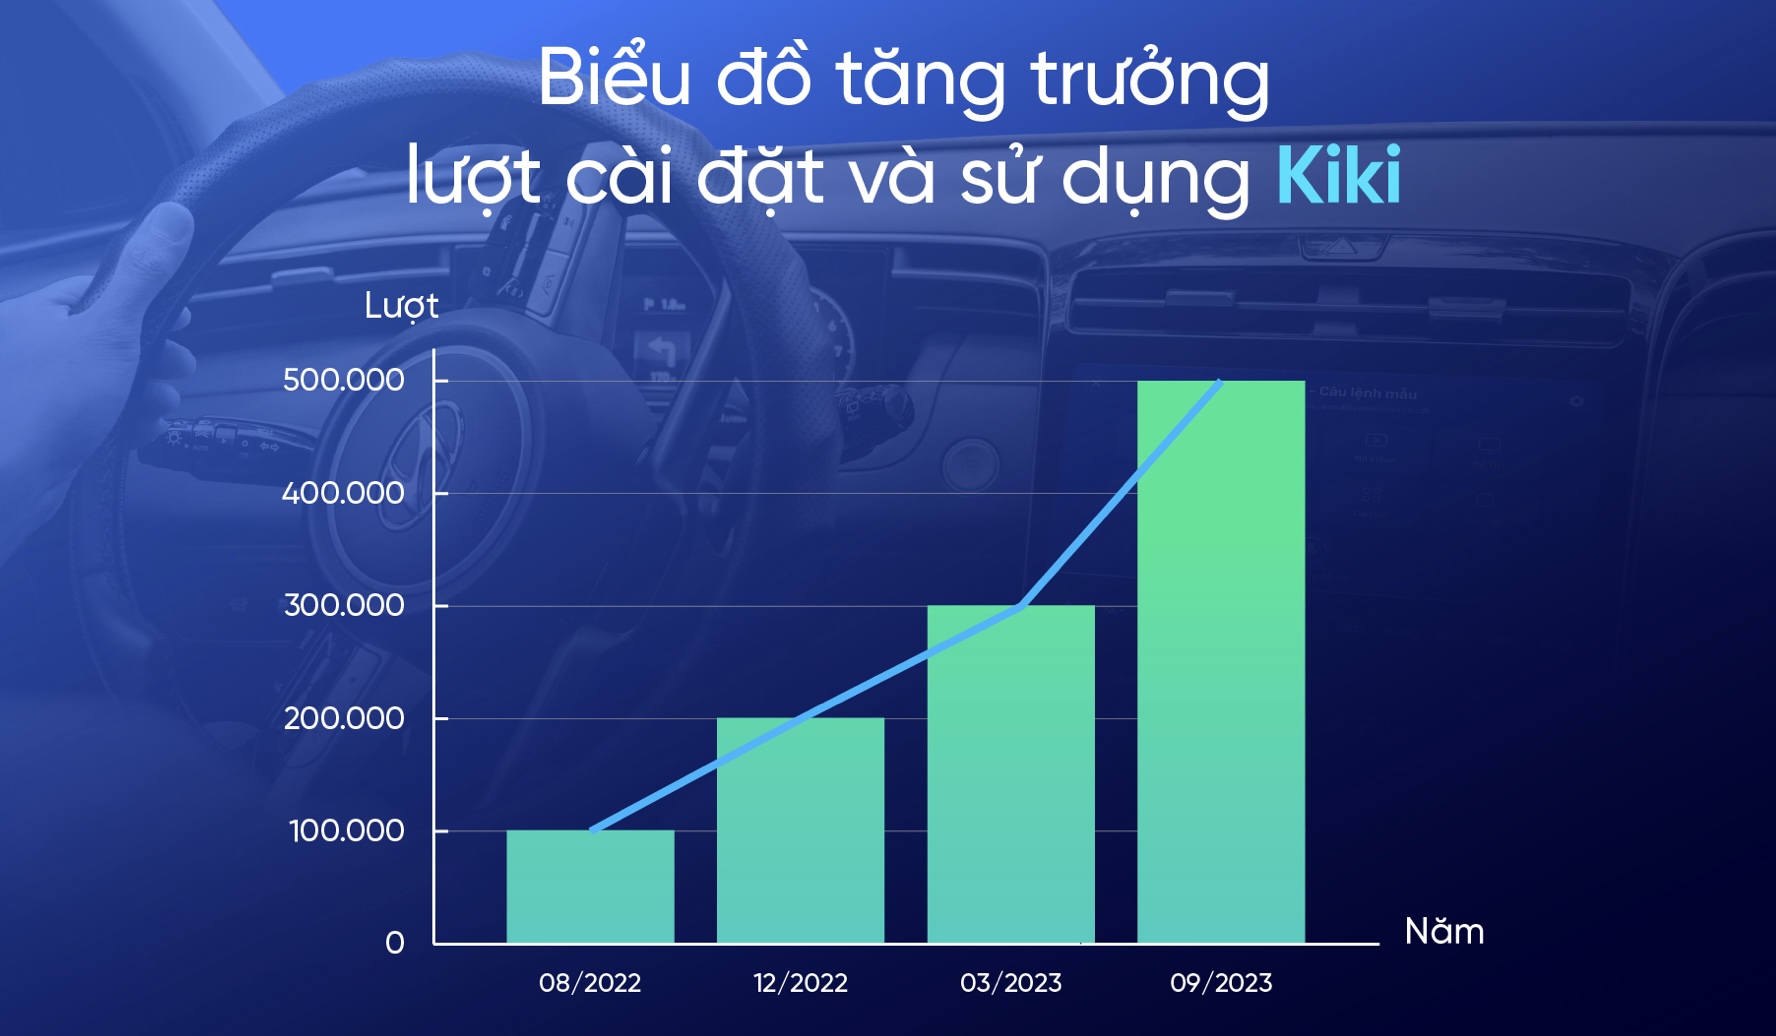 Chỉ sau 1 năm, trợ lý giọng nói Kiki trên ô tô đã tăng trưởng 400%, chính thức cán mốc 500.000 lượt cài đặt 